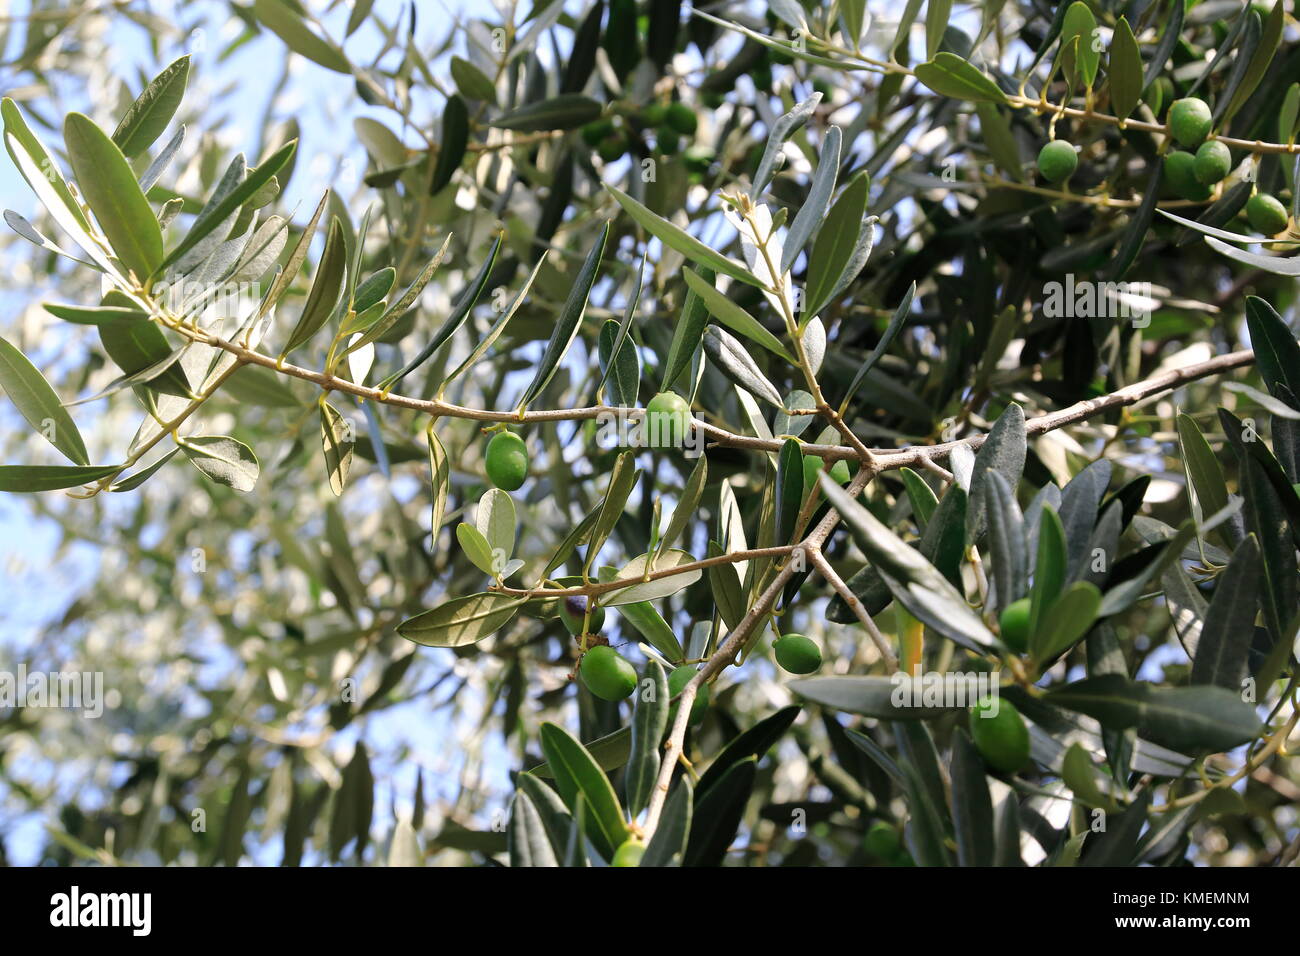 Grüne Oliven an einem Strauch, Olivenbaum Stock Photo